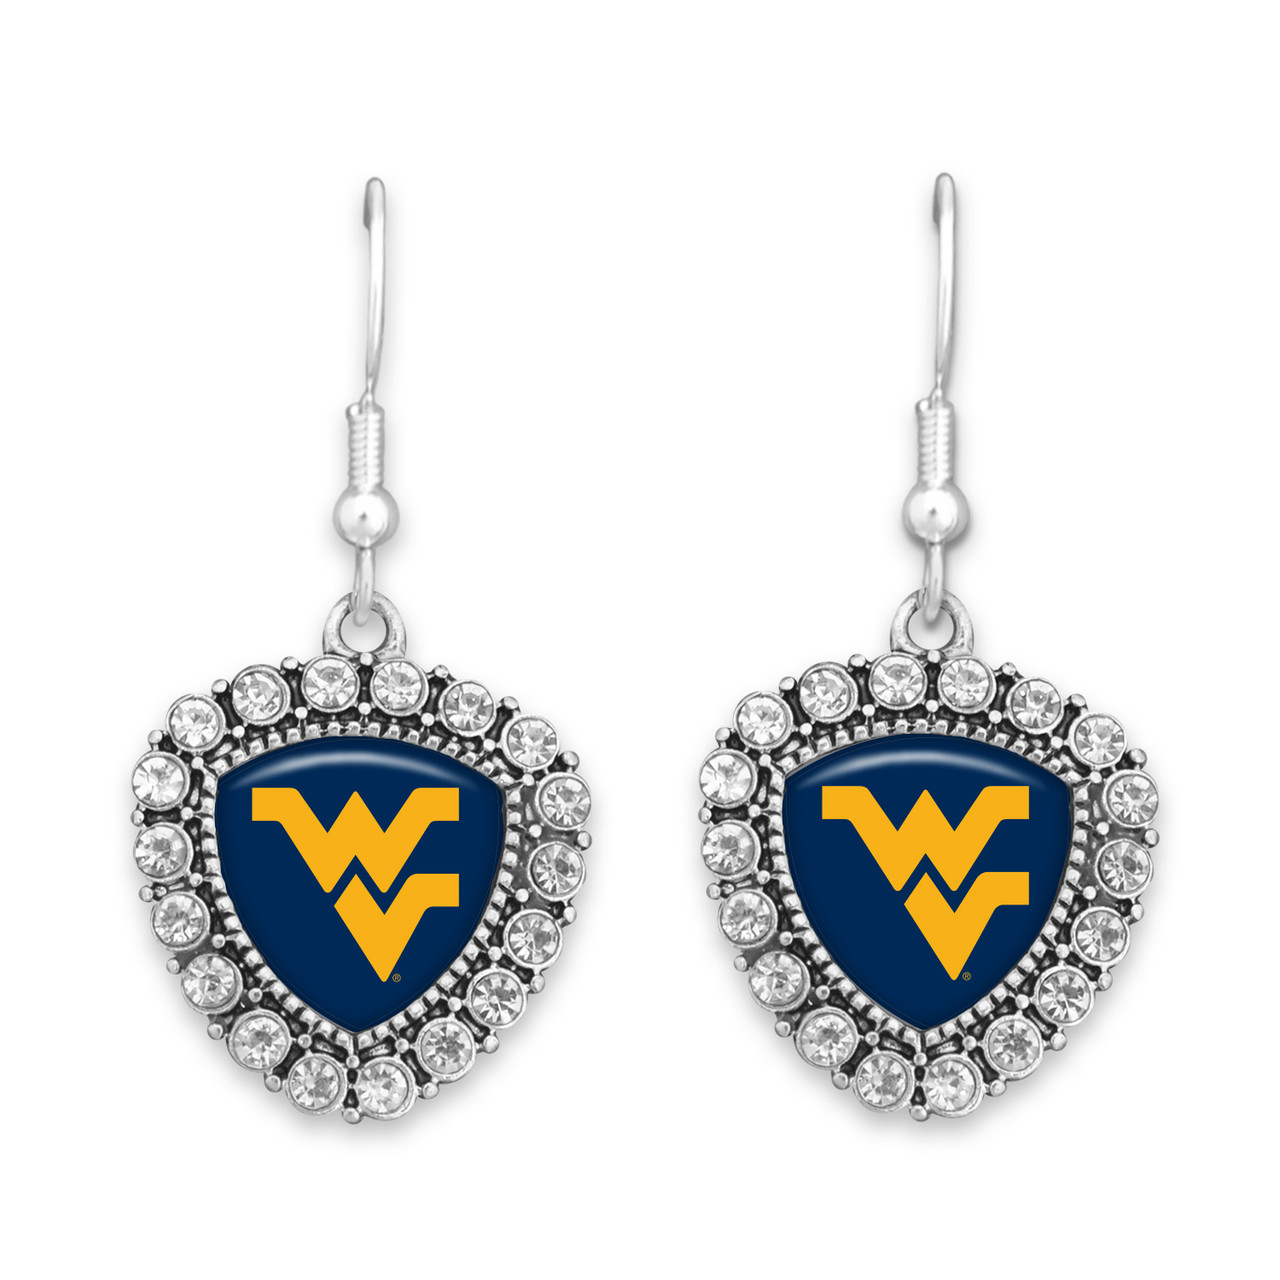 West Virginia Mountaineers Earrings- Brooke